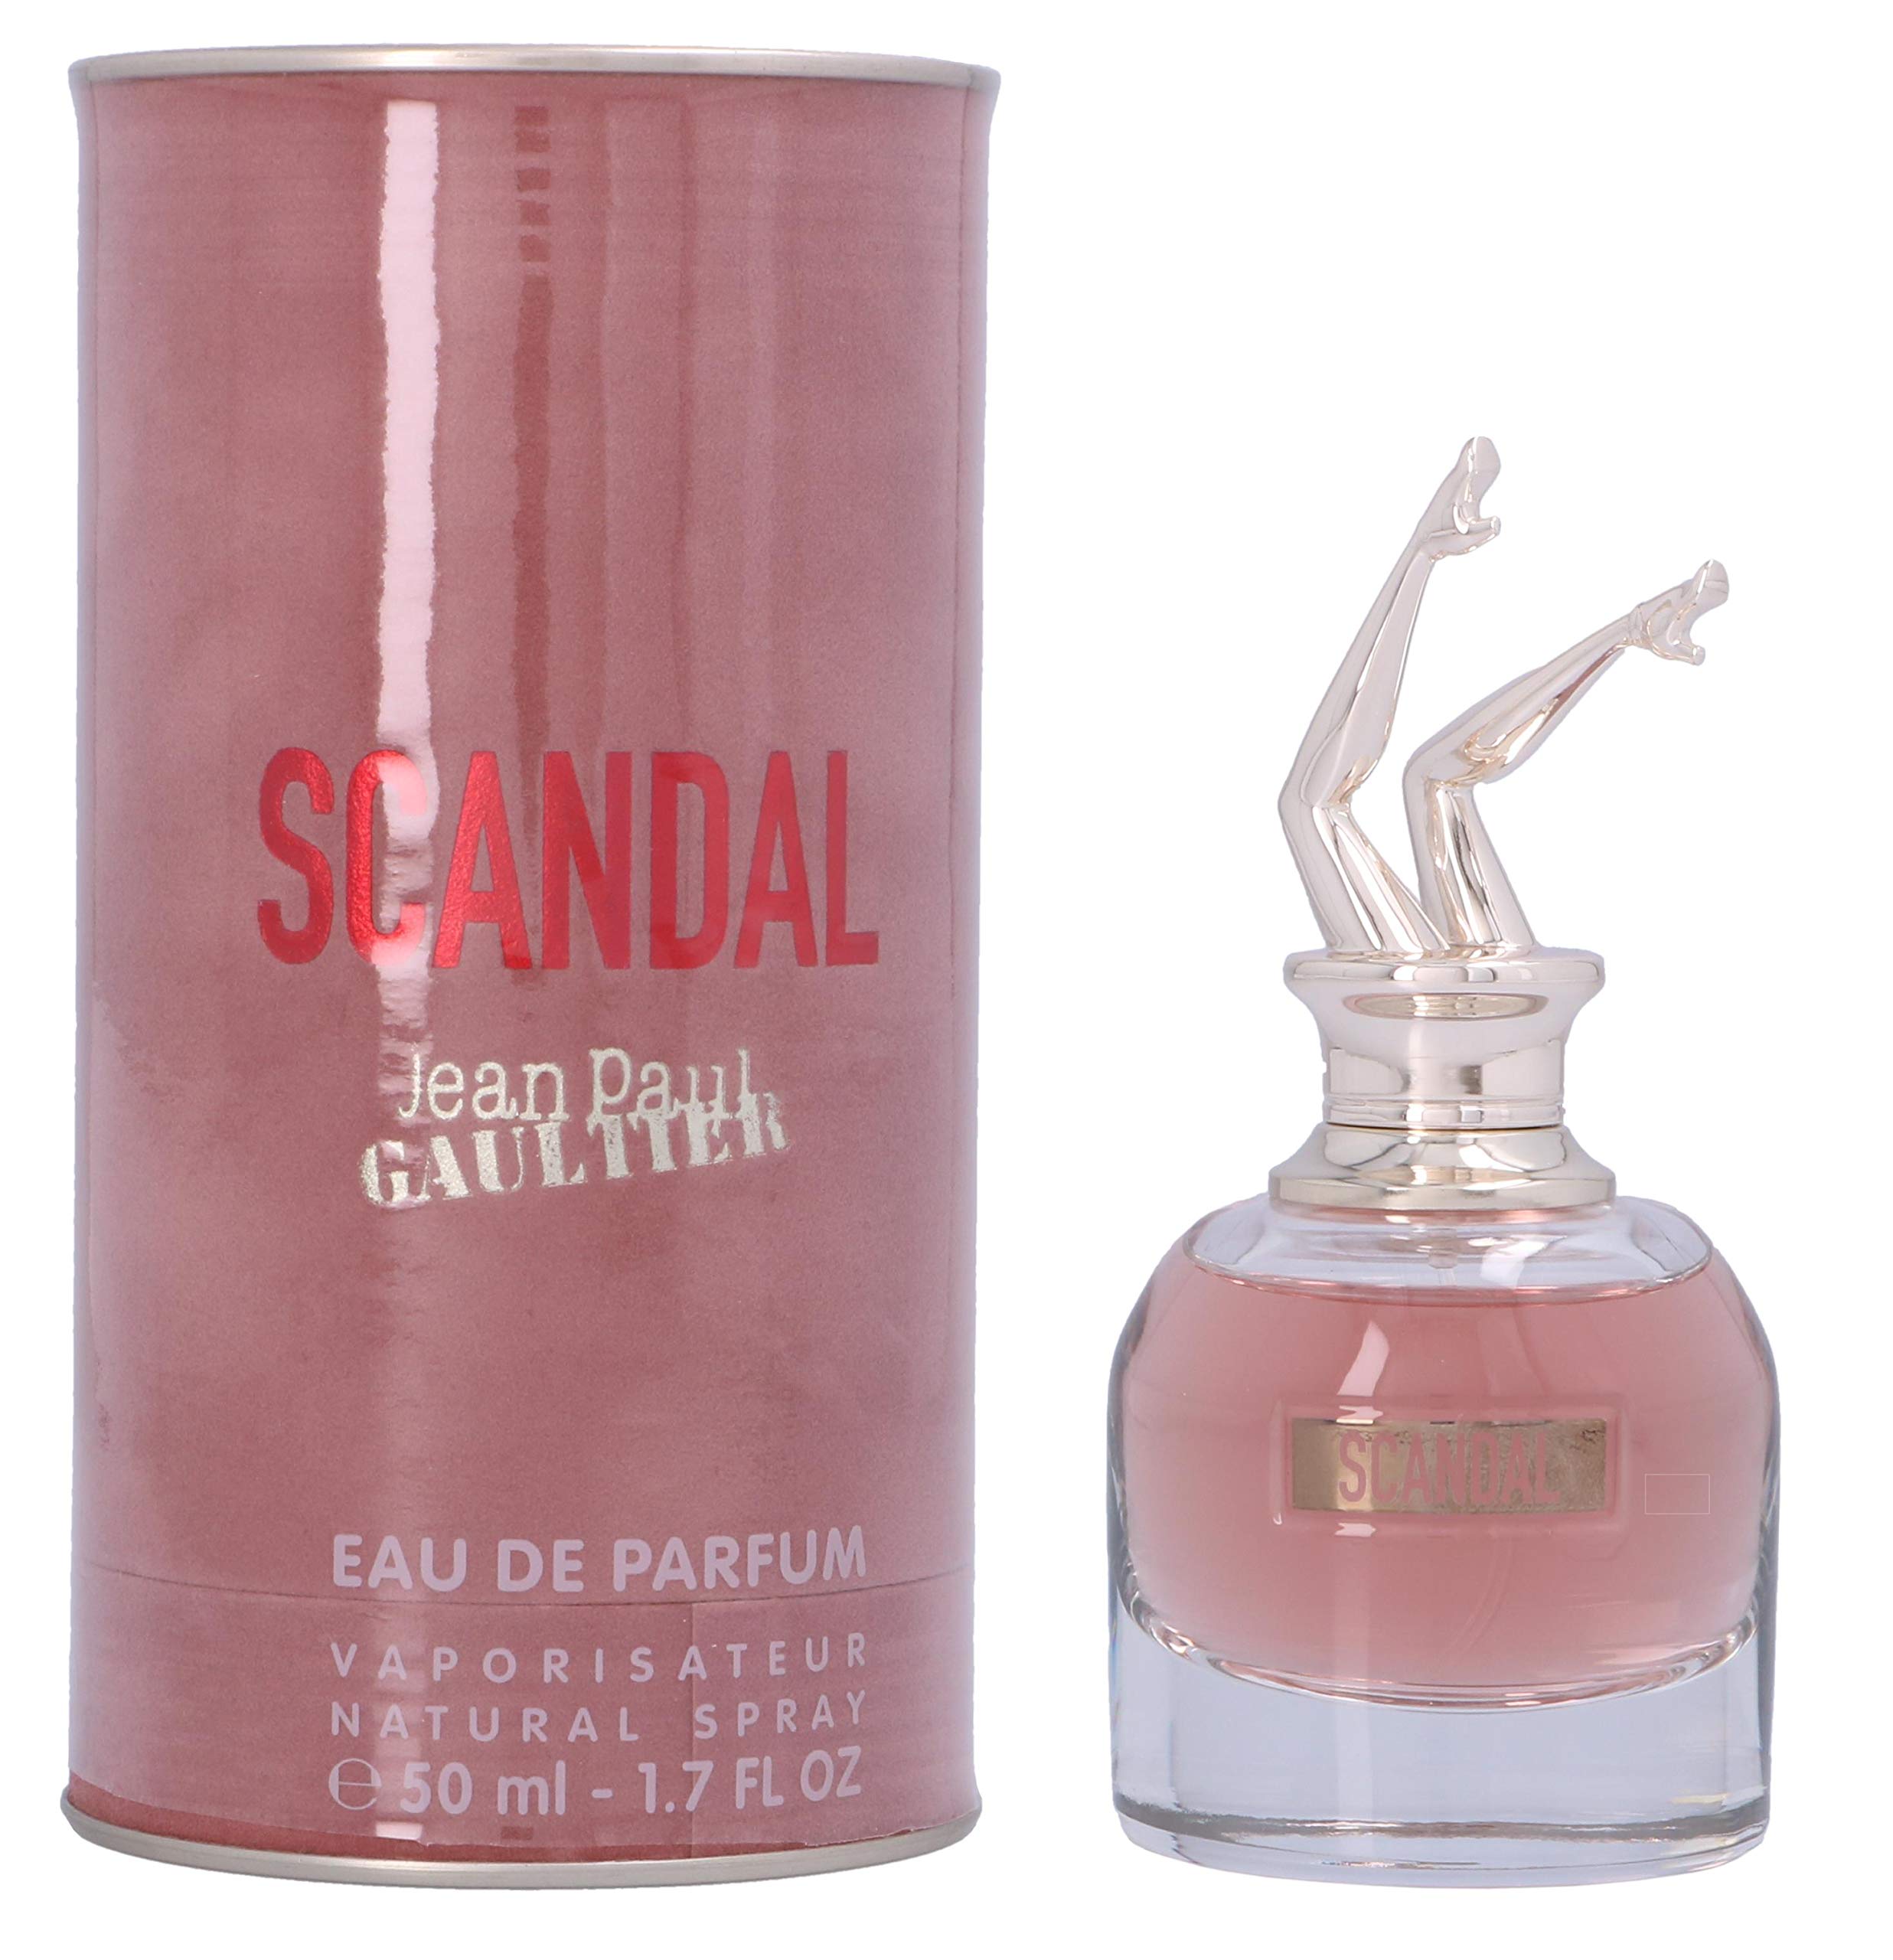 Scandal by Jean Paul Gaultier Eau de Parfum Spray 50ml